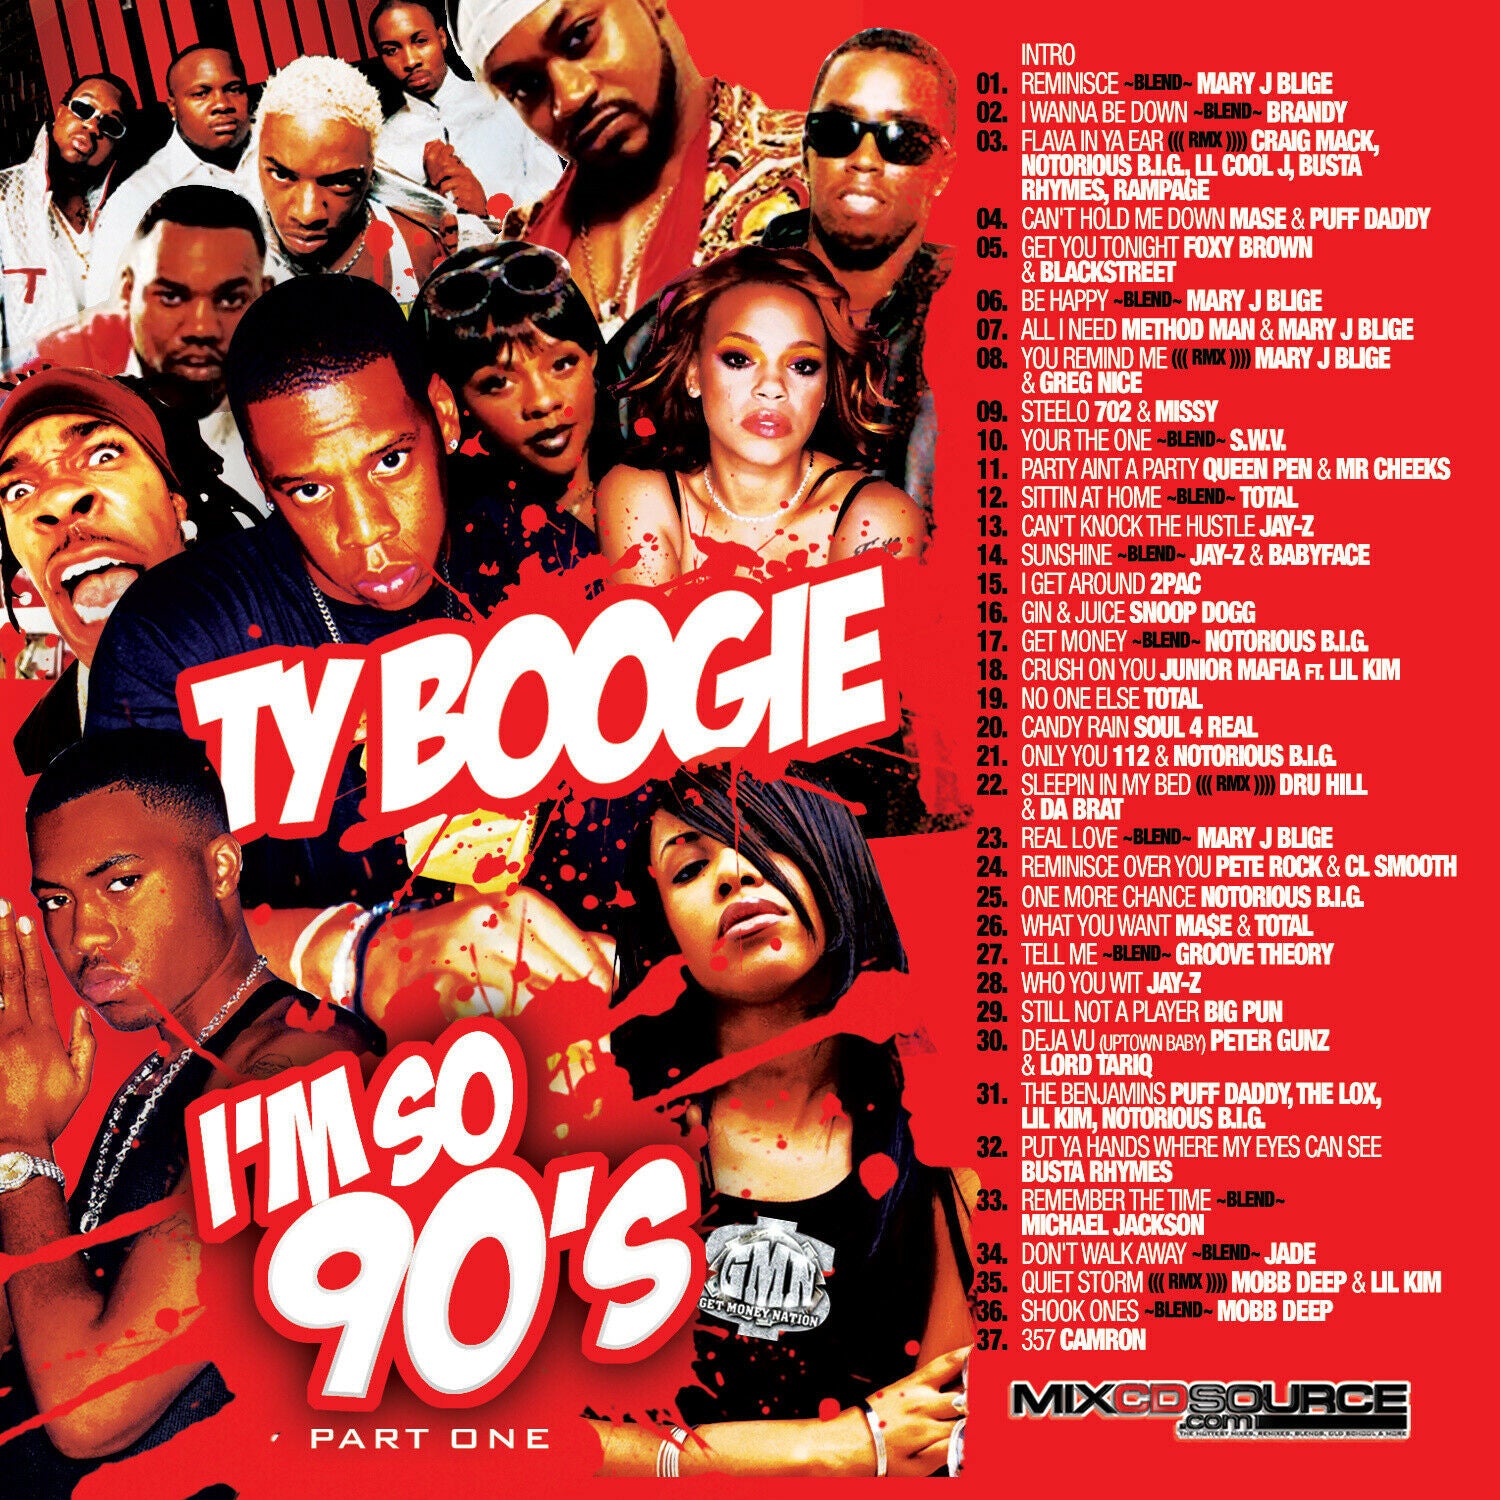 DJ TY BOOGIE - I'M SO 90's Pt. 1 (MIX CD) 90's R&B, HIP-HOP and 